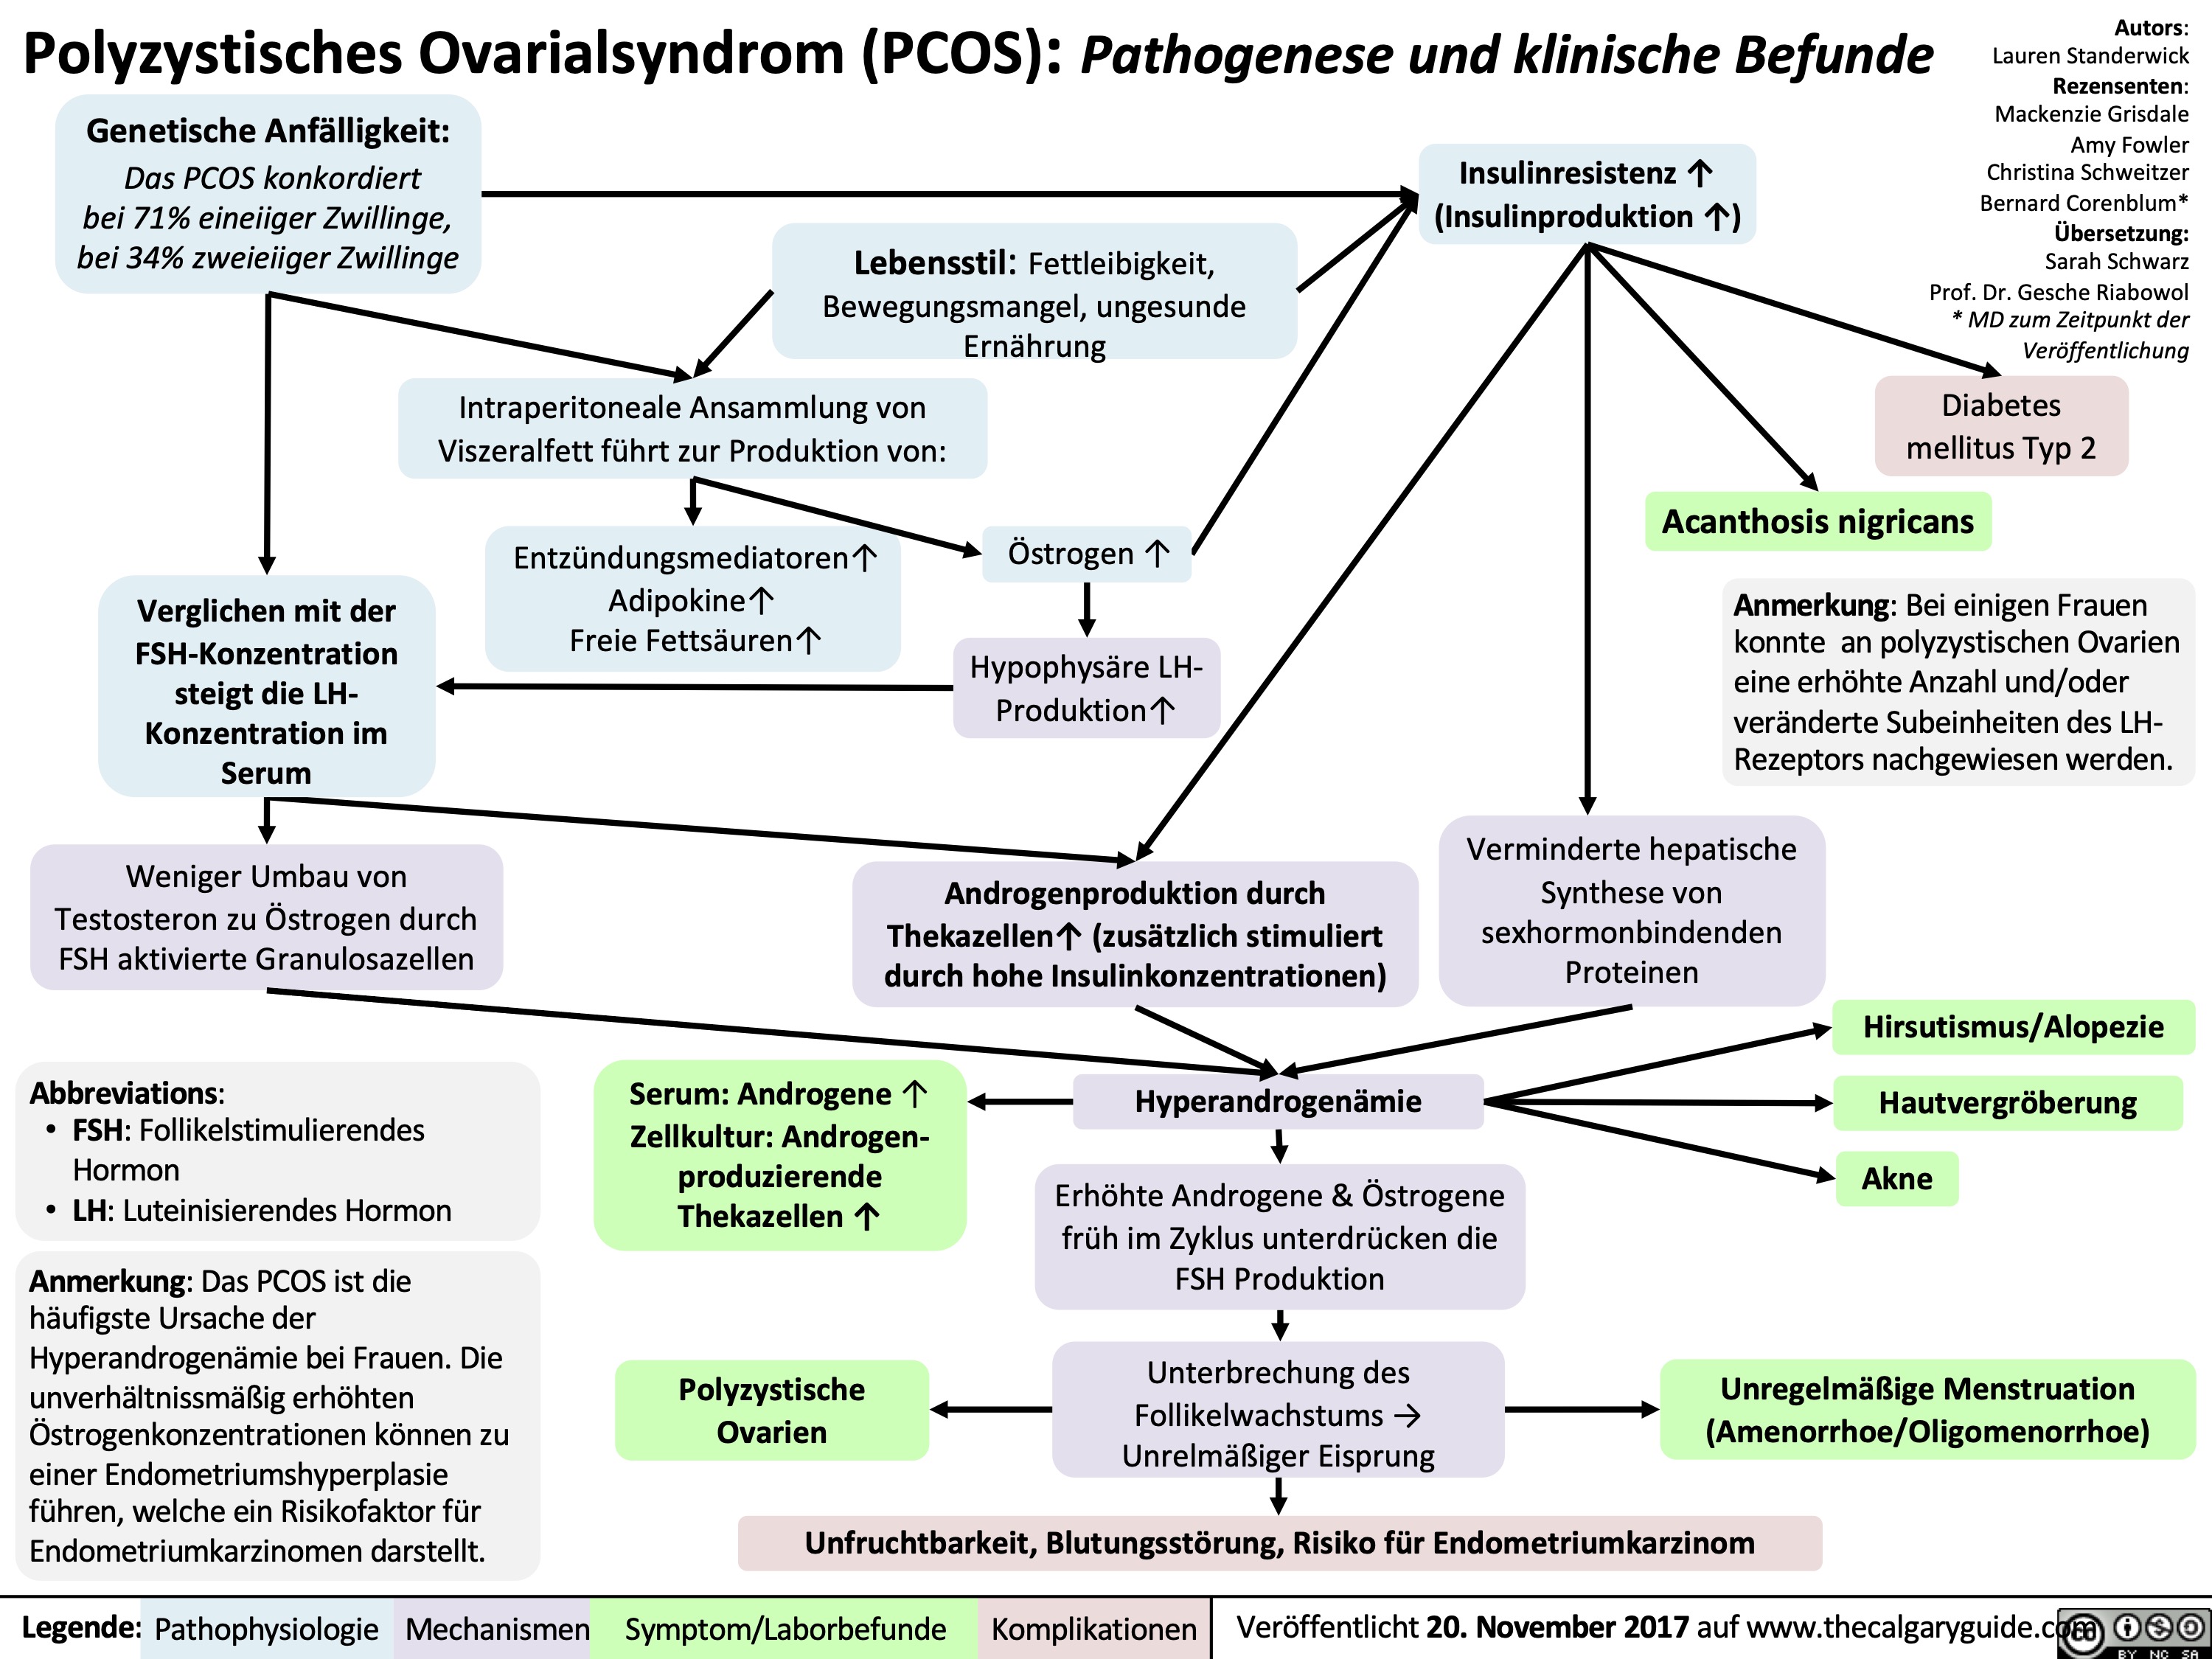 Polyzystisches Ovarialsyndrom (PCOS): Pathogenese und klinische Befunde